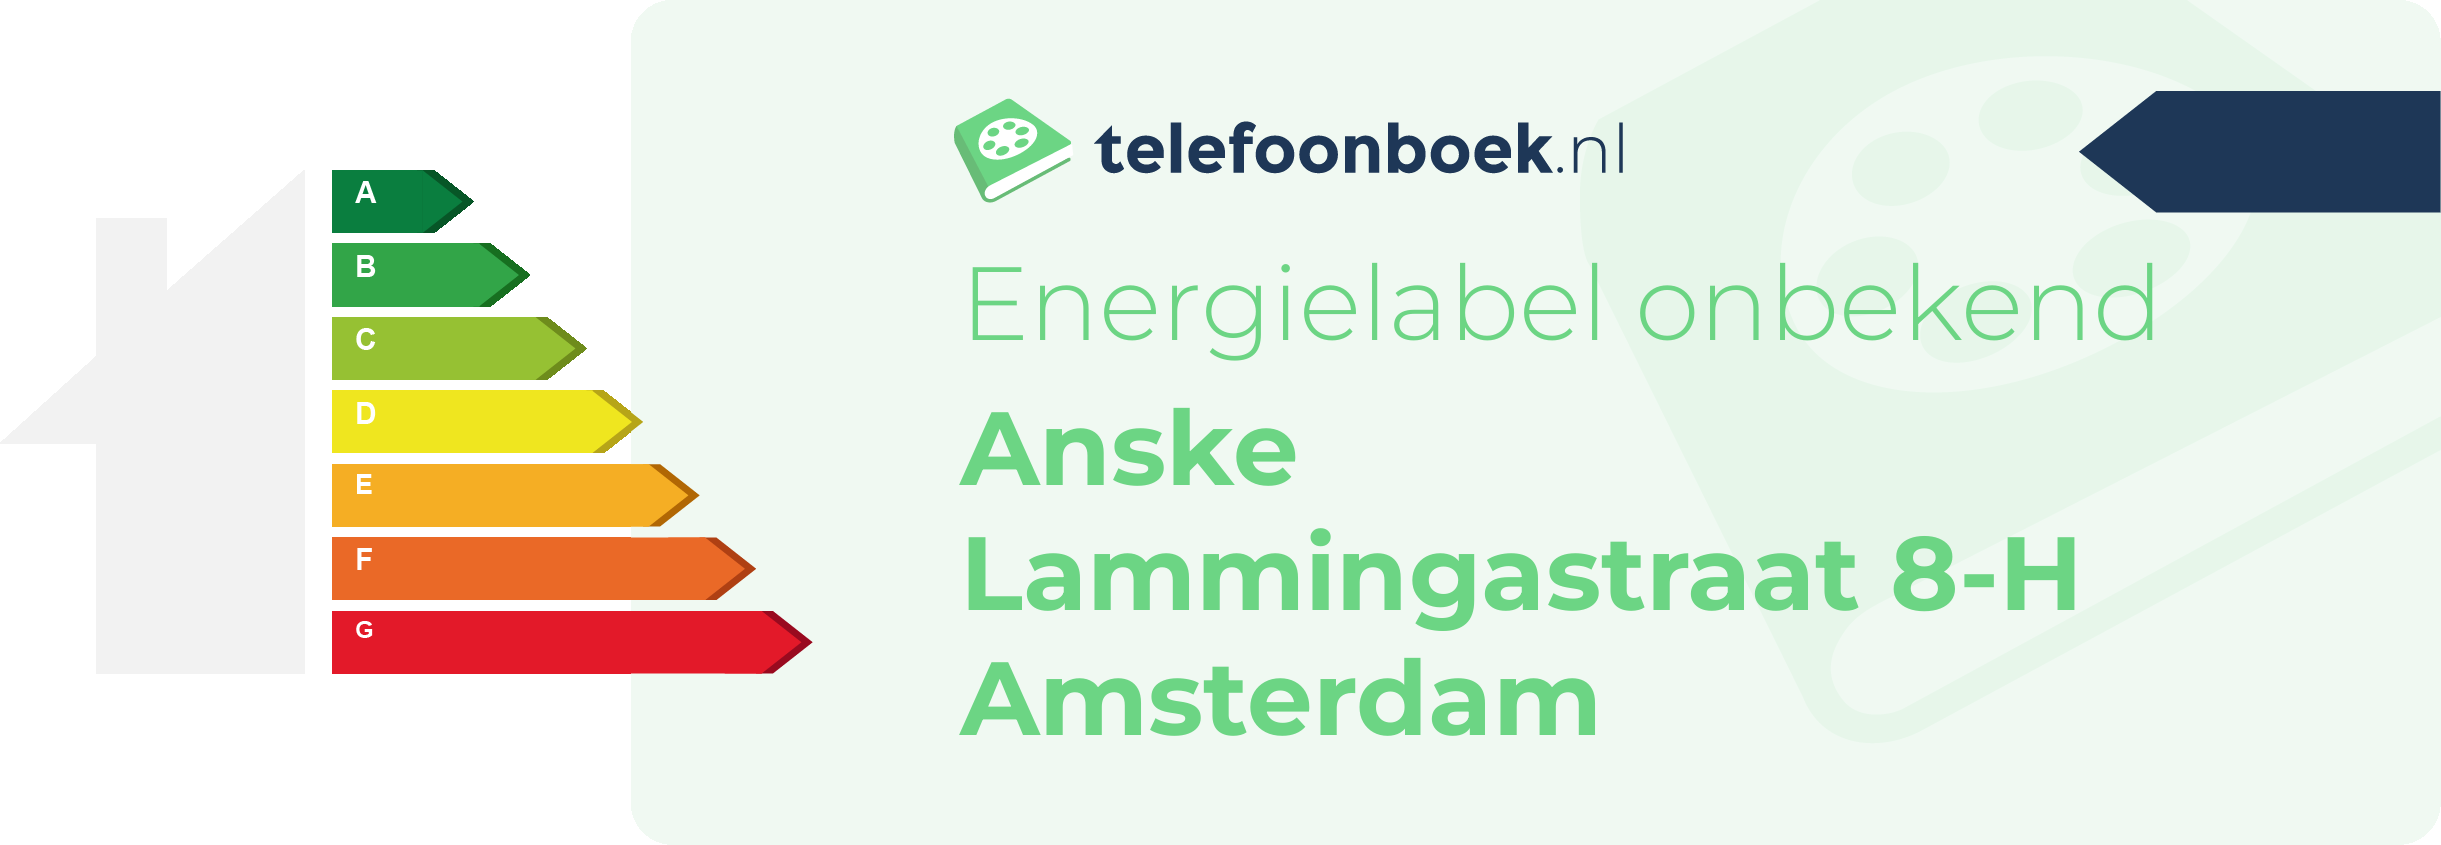 Energielabel Anske Lammingastraat 8-H Amsterdam